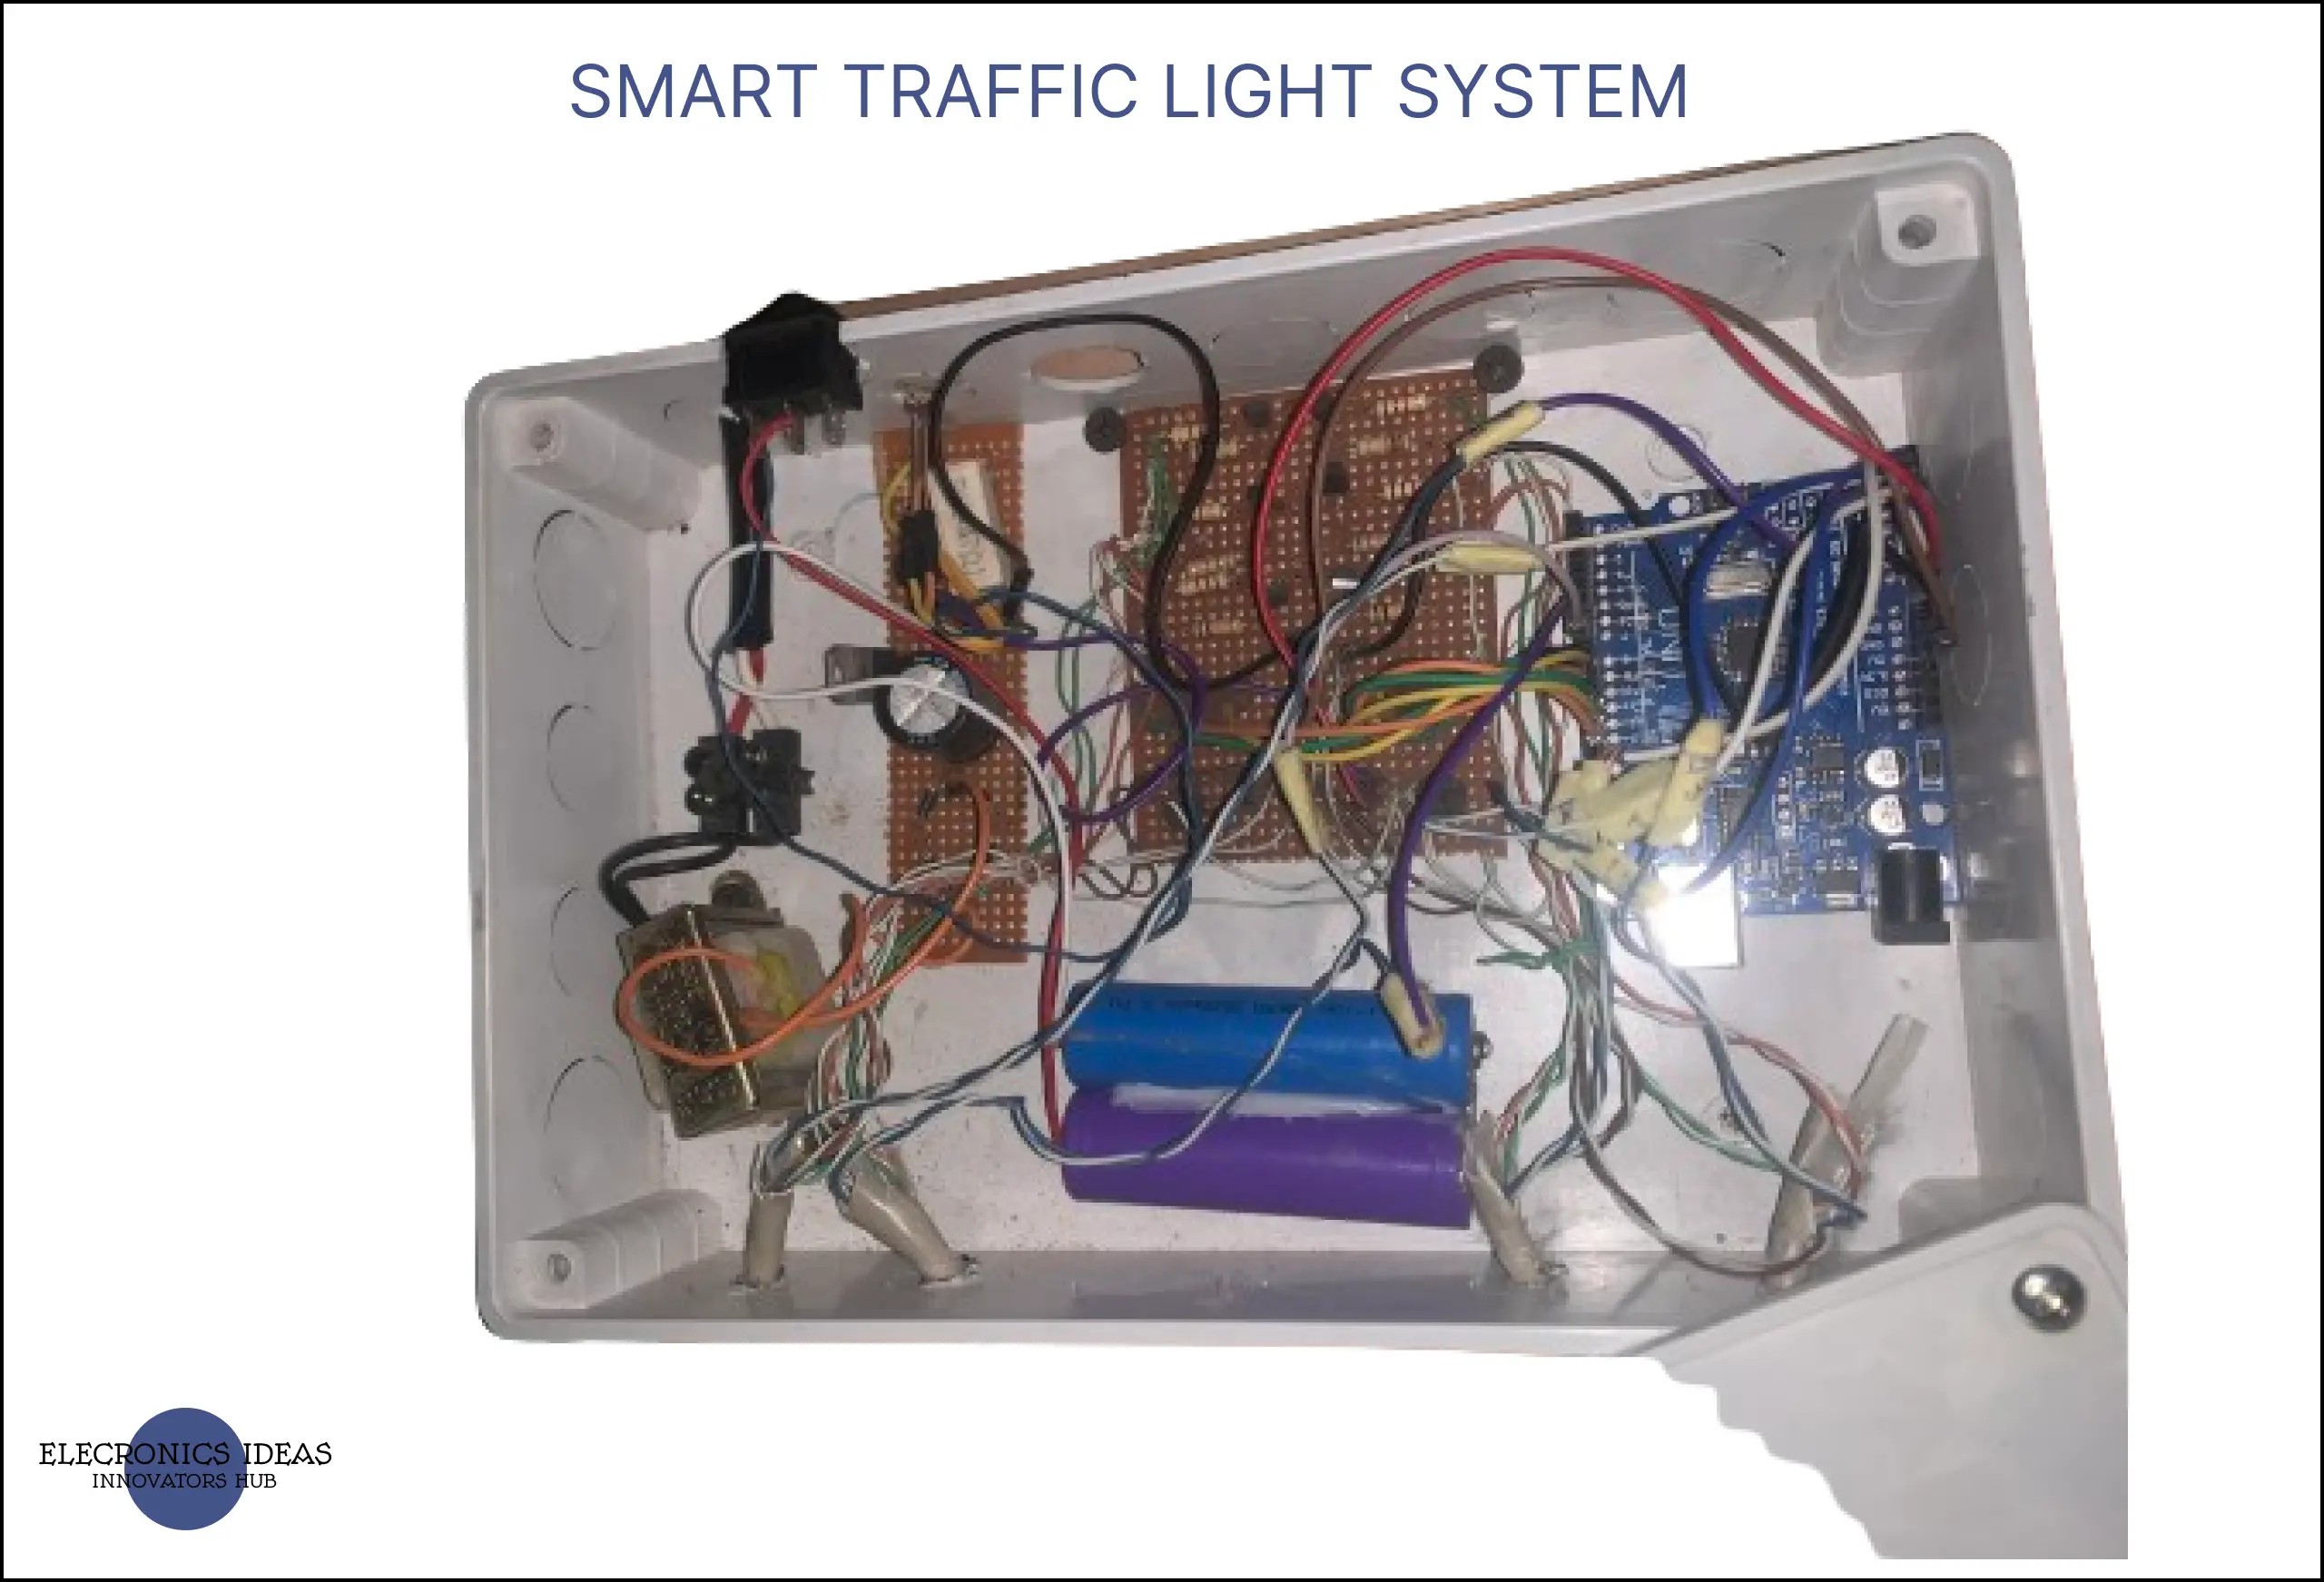 Smart traffic light system